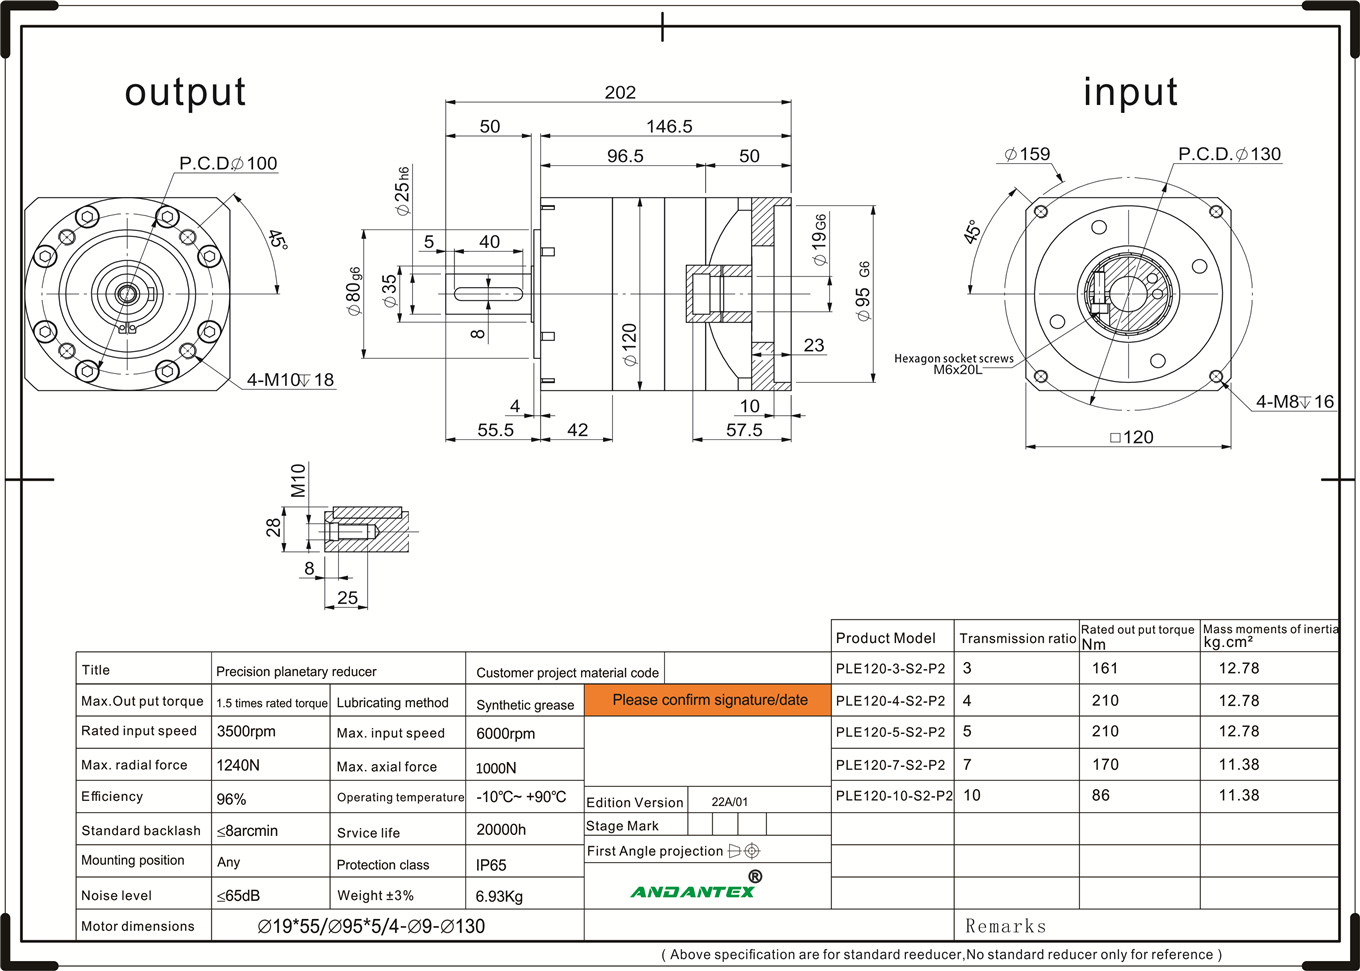 Andantex ple120-10-s2-p2 réducteur de vitesse de série standard appliqué dans l'équipement de film en rouleau-01